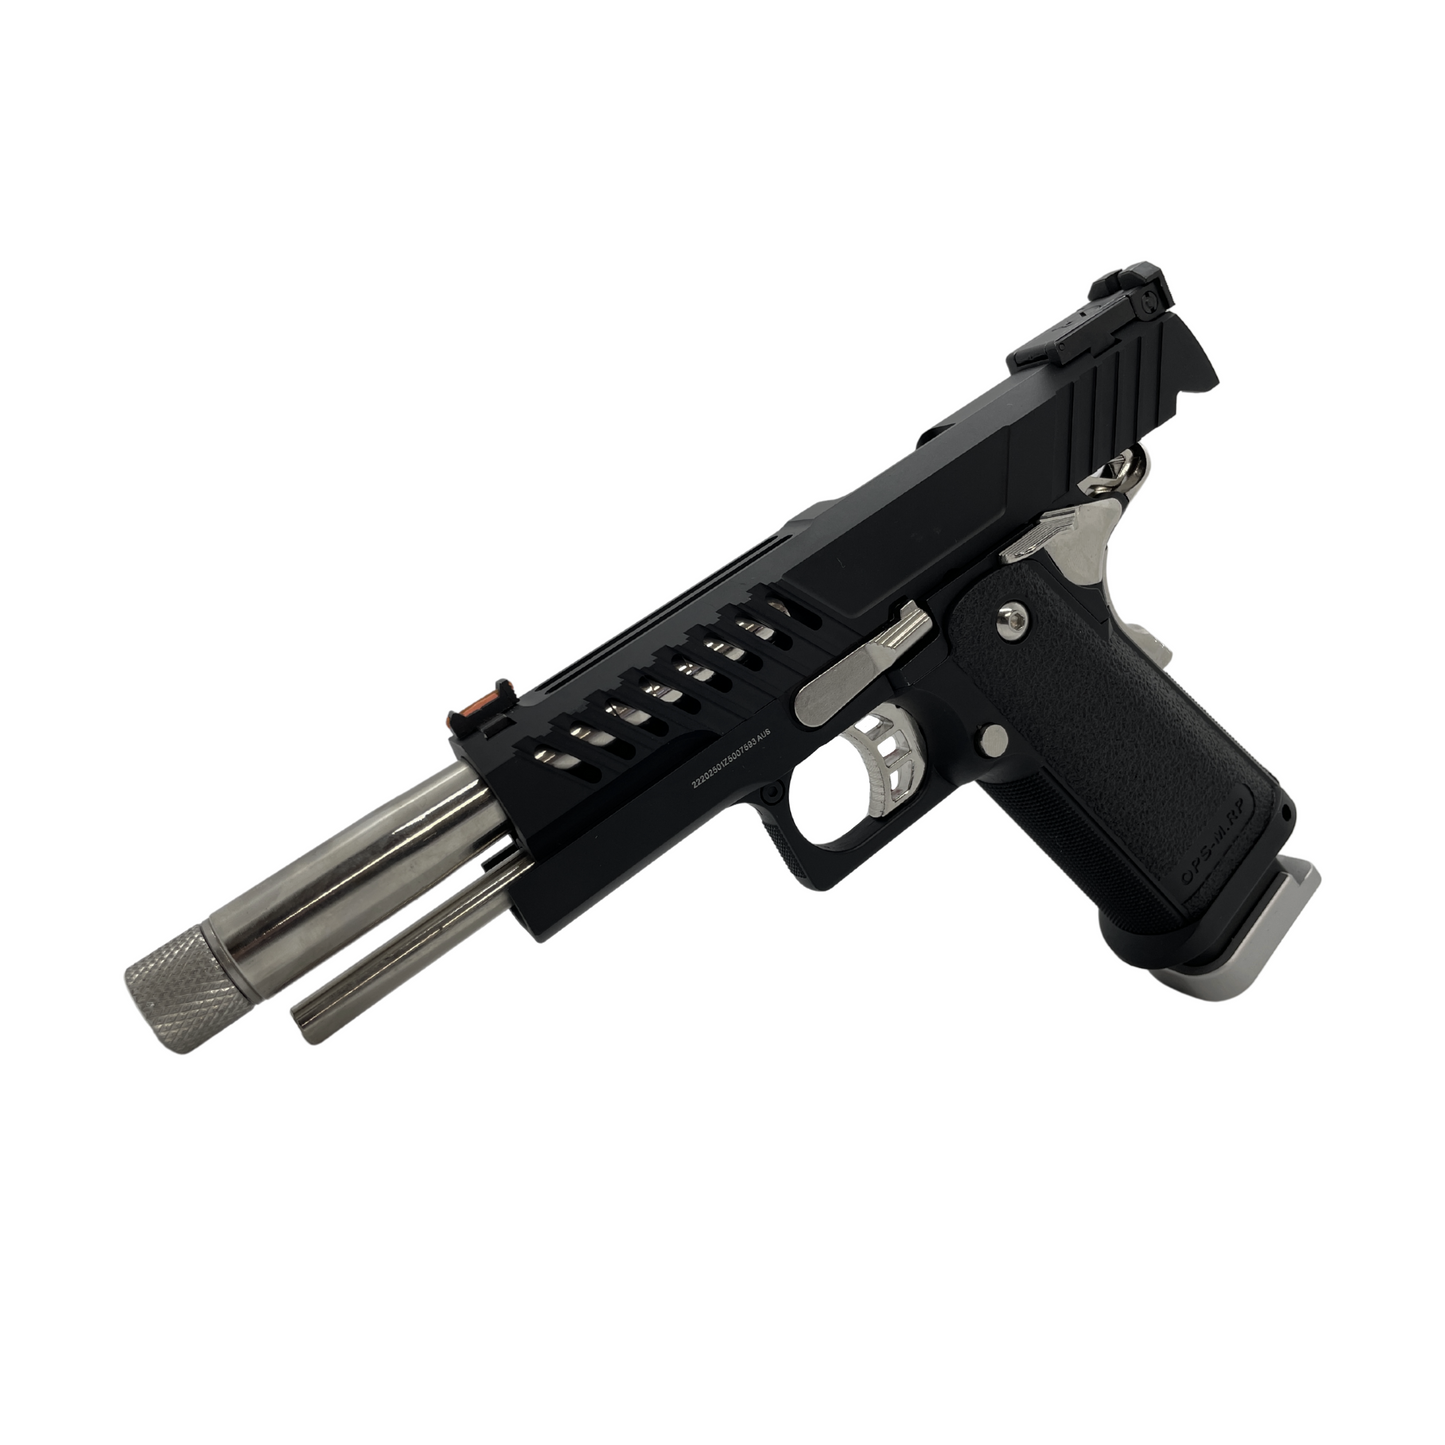 "Narcos" G/E 5.1 Hi-Capa Gas Pistol - Gel Blaster